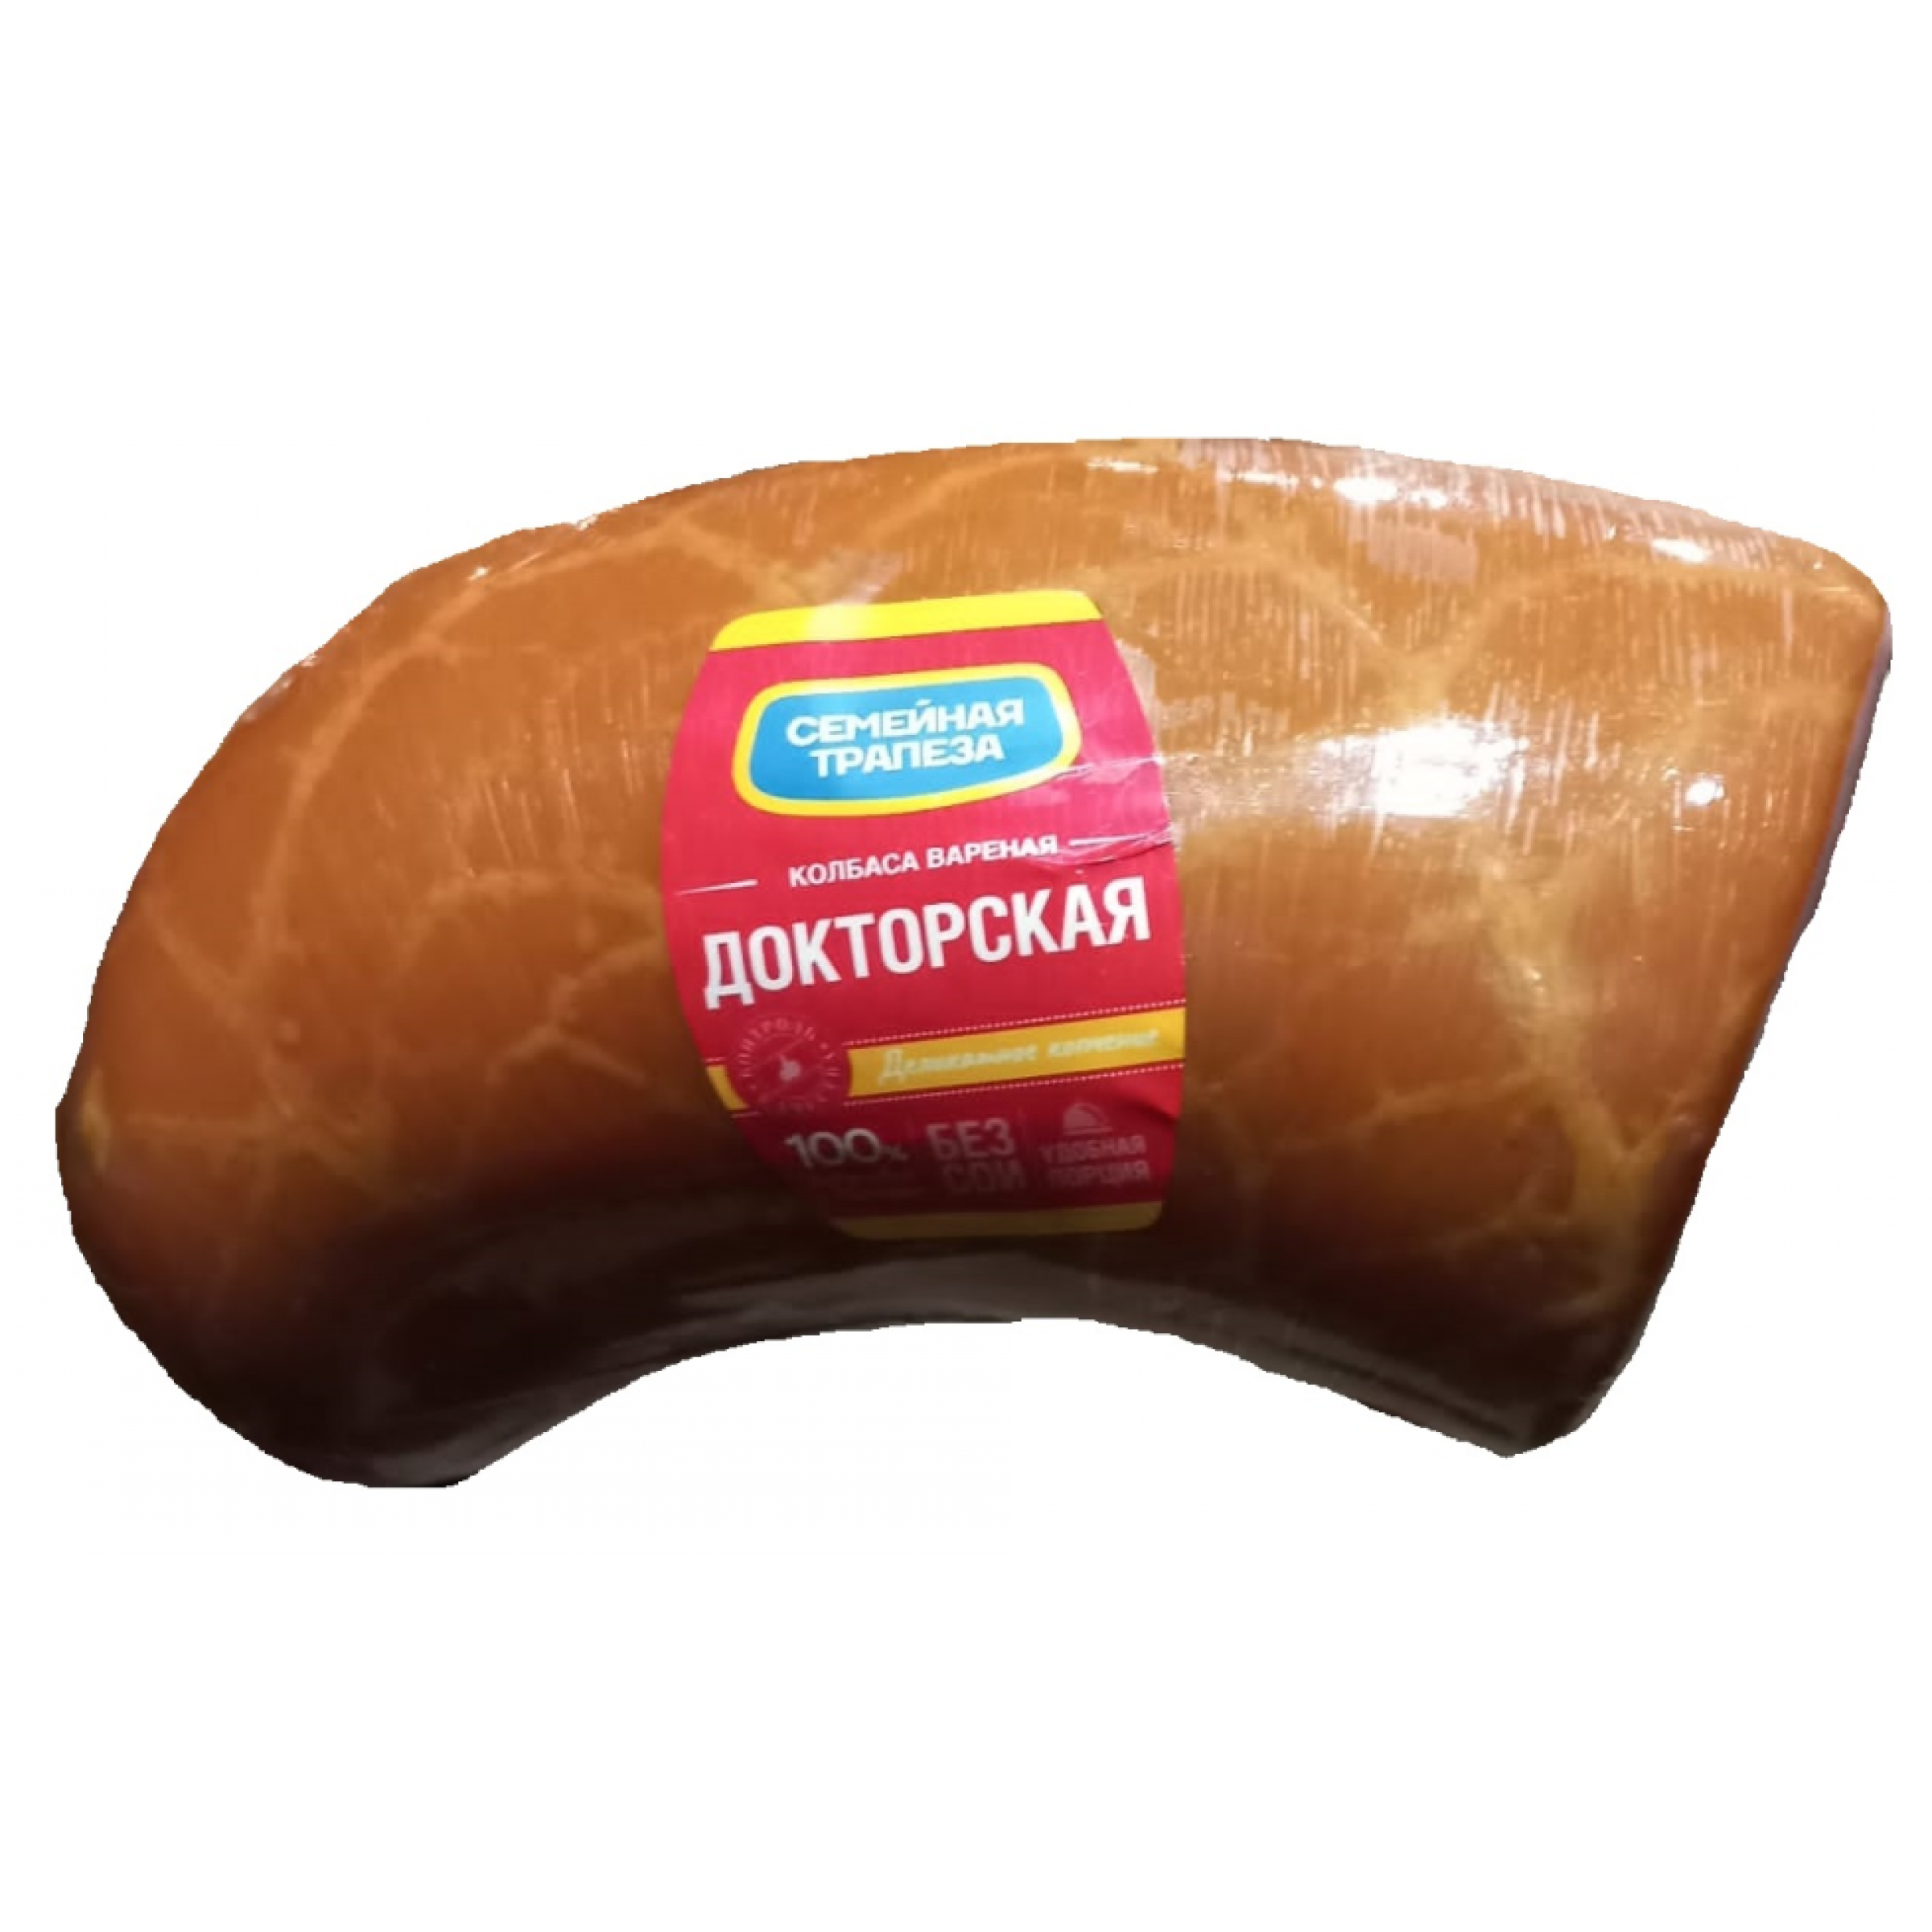 Вареная колбаса Докторская Мини Кузминки (средний вес: 1300 г)